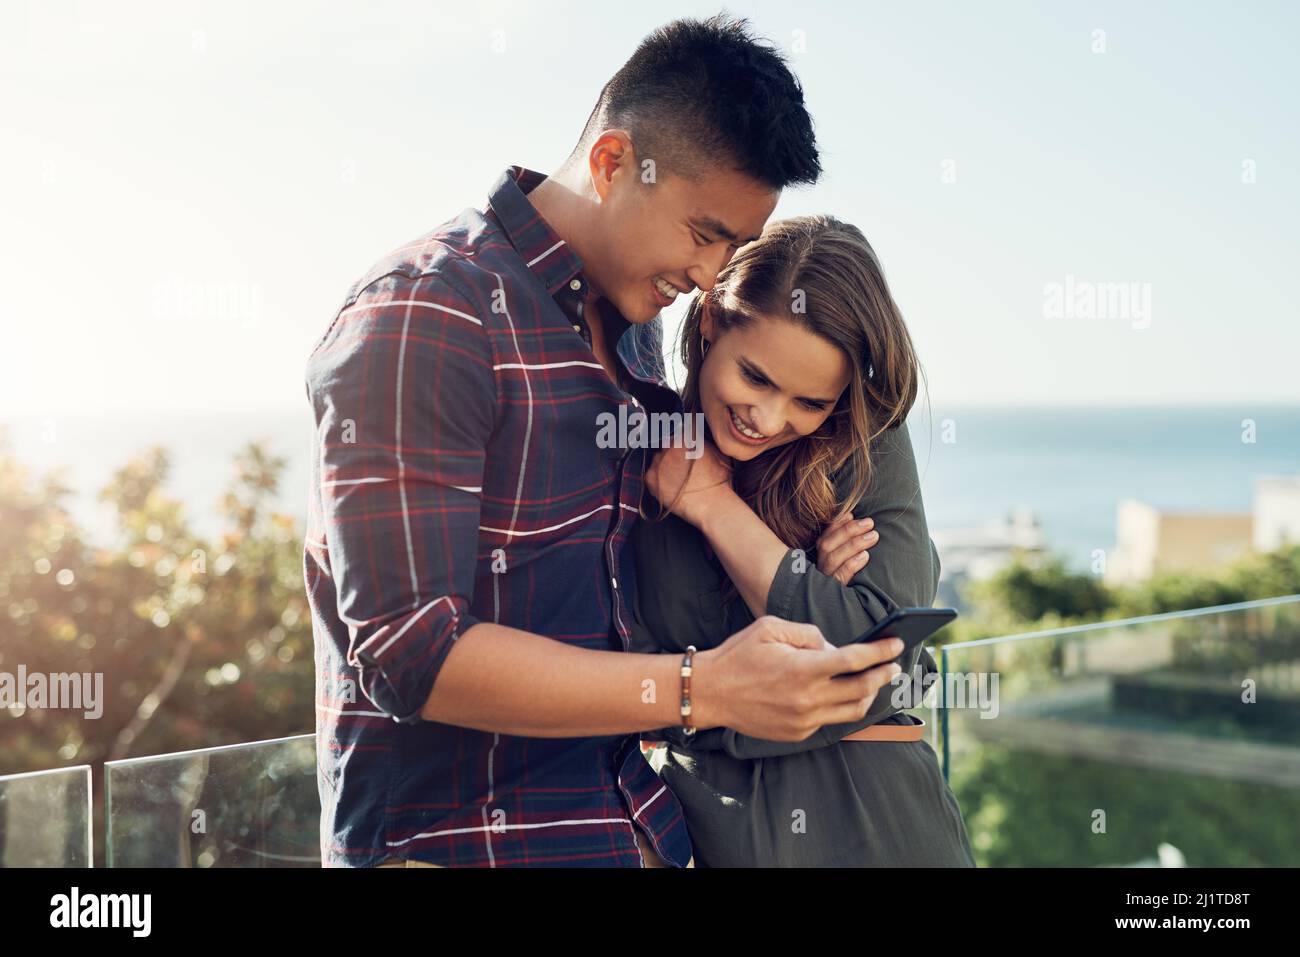 Nous avons pris ensemble quelques instants précieux. Photo d'un jeune  couple affectueux utilisant un téléphone portable ensemble tout en se  relaxant à l'extérieur Photo Stock - Alamy